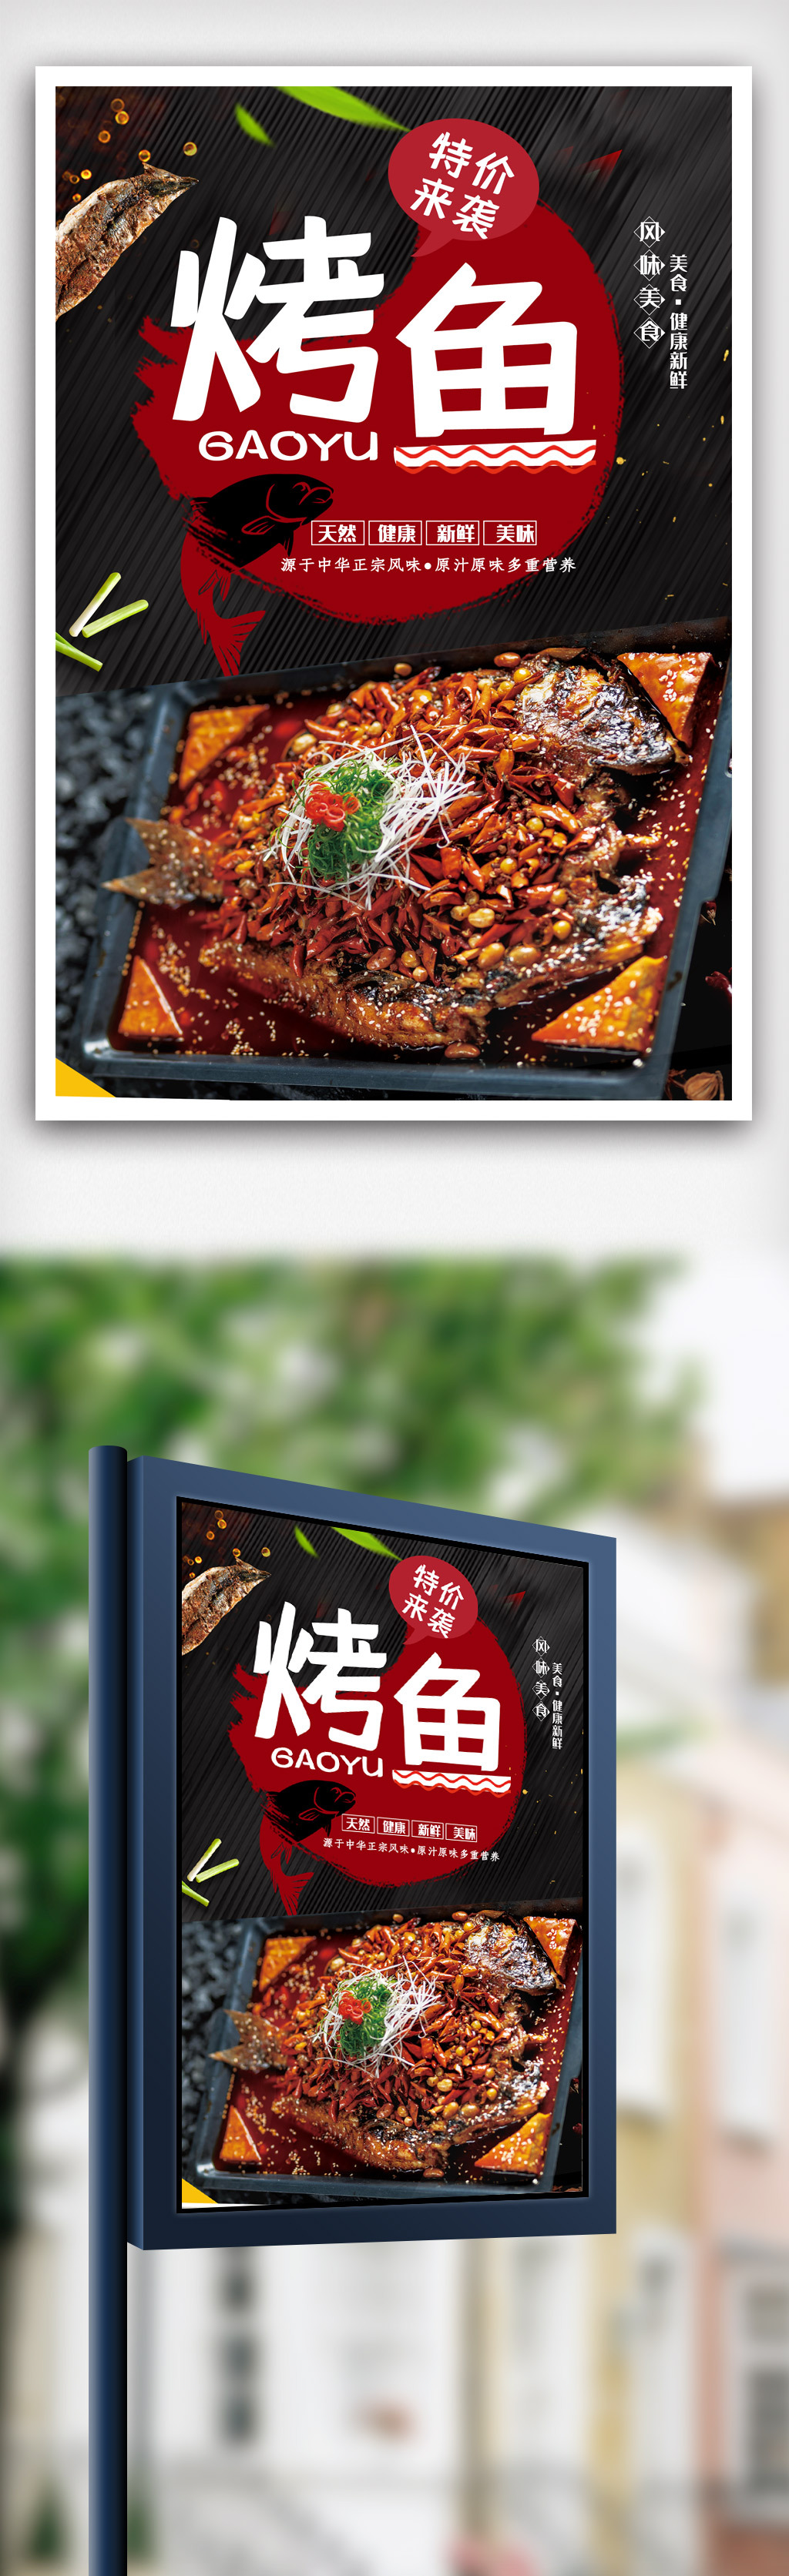 烤鱼餐饮美食系列海报设计.psd图片